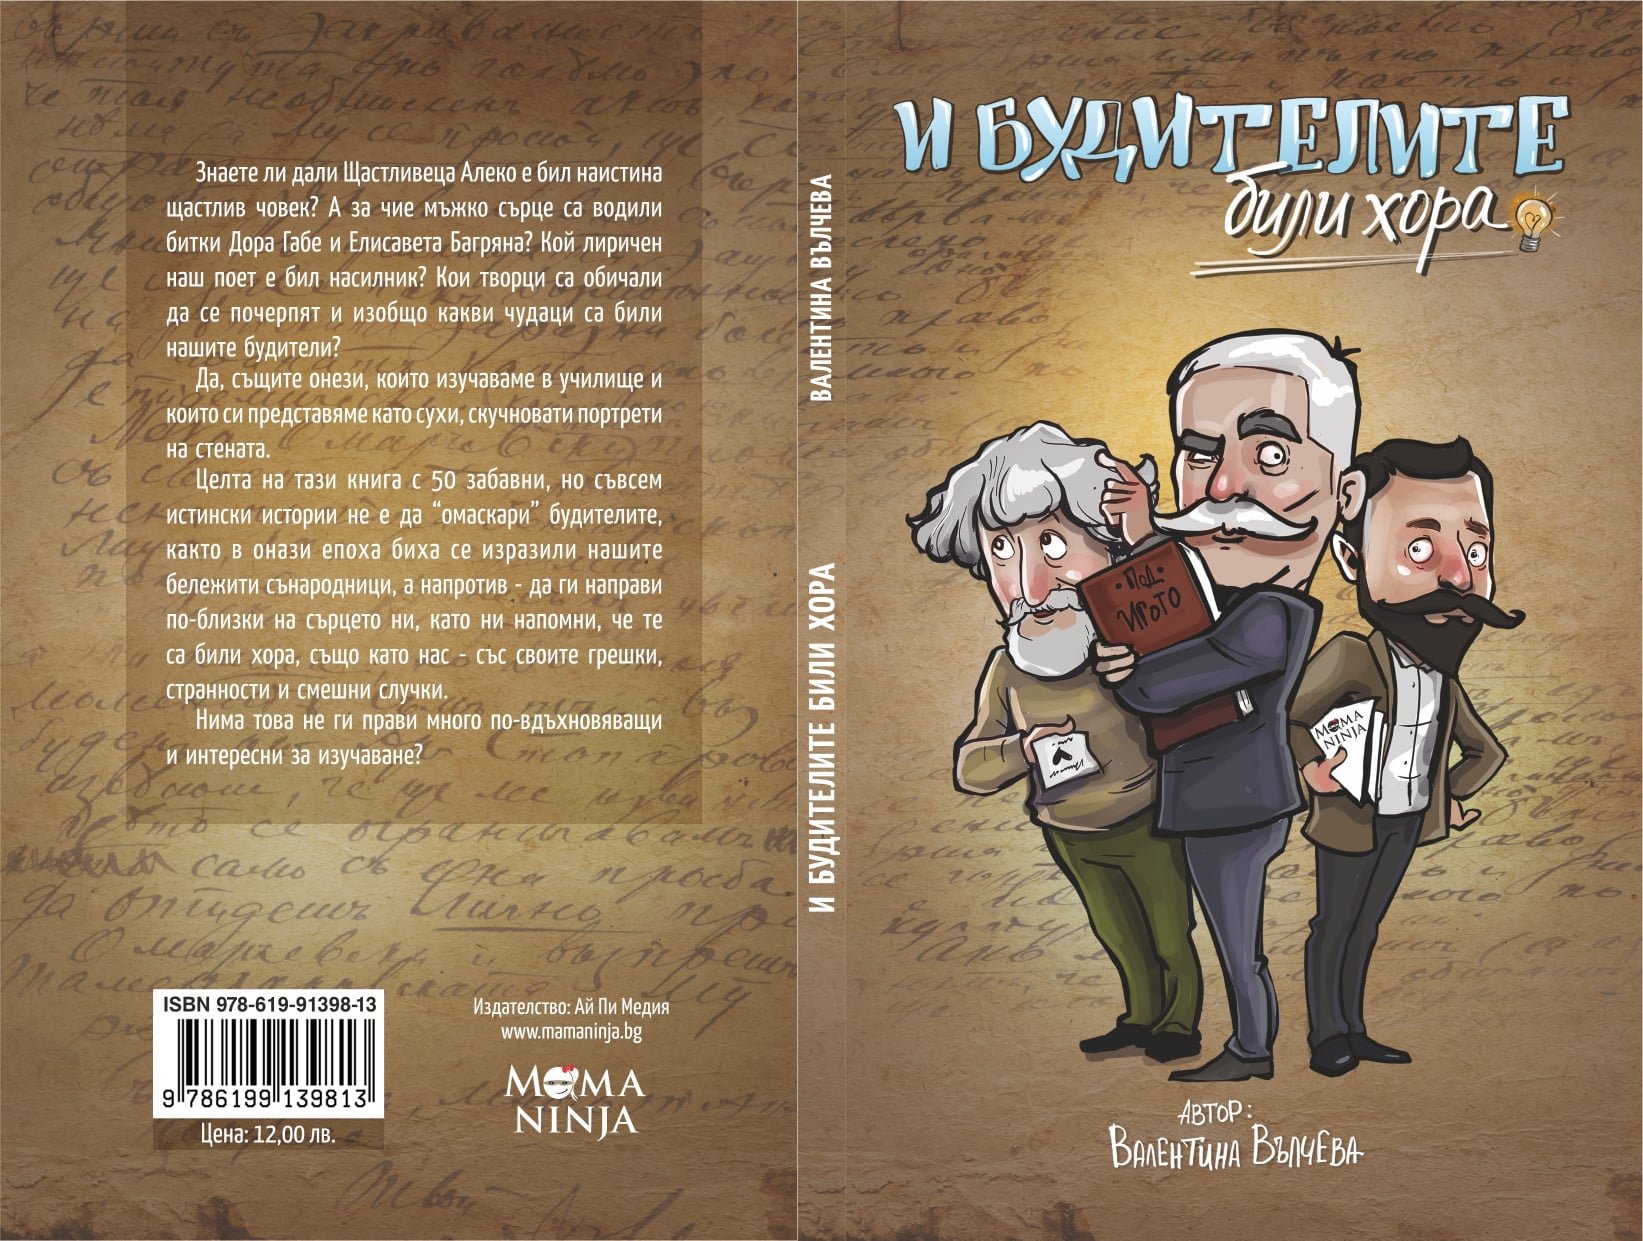 Първата книга на Валентина Вълчева библиотекар в РБ Михалаки Георгиев във Видин  носи